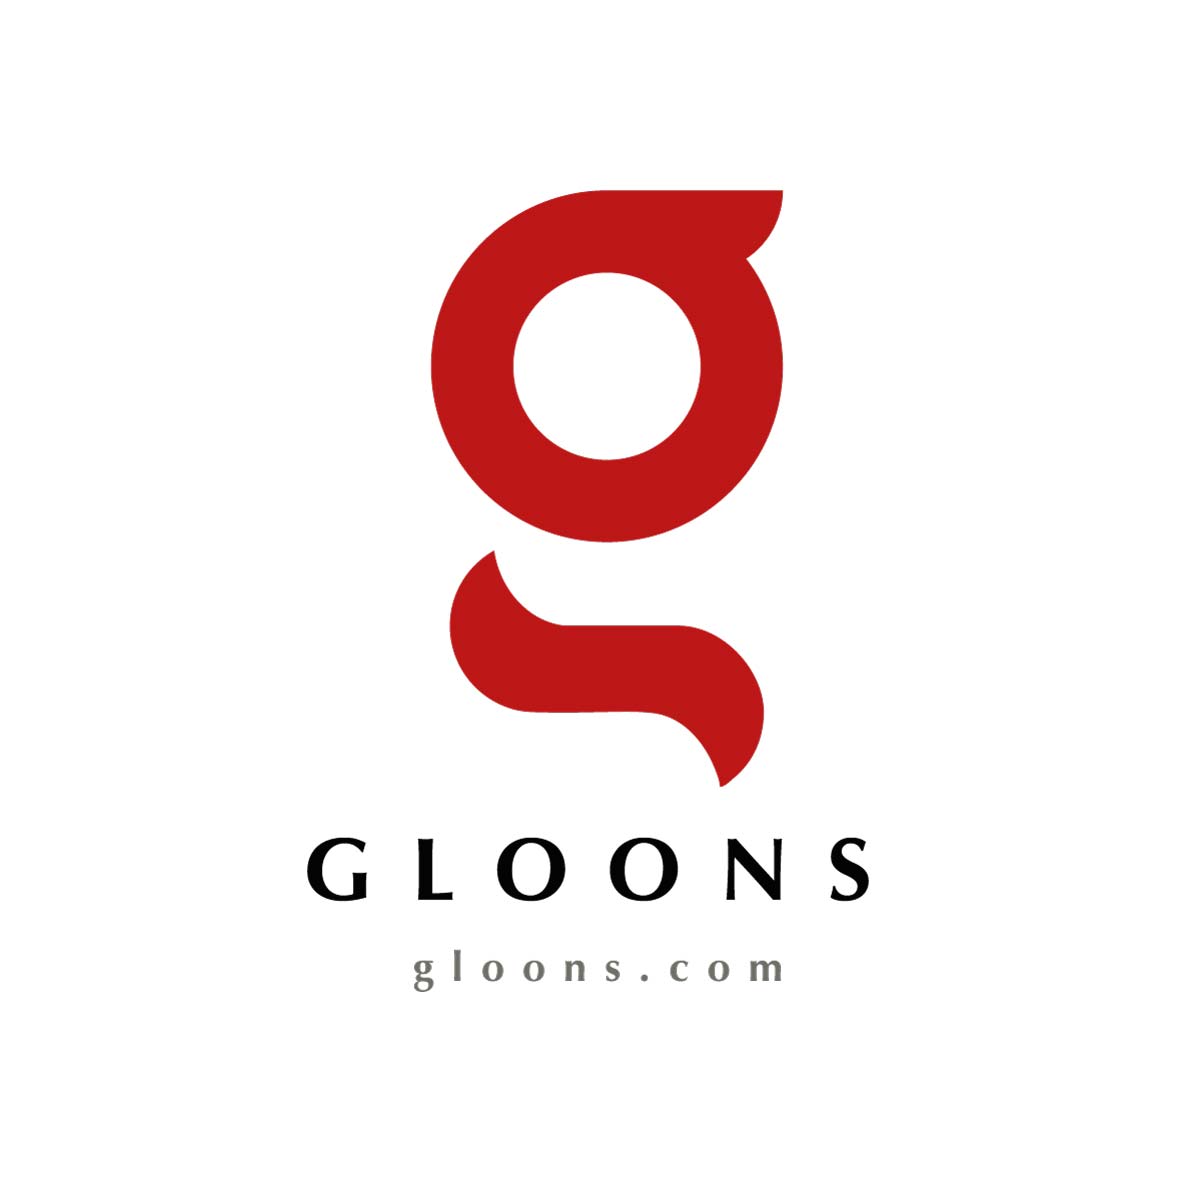 Gloons - Branding design by Brandizle